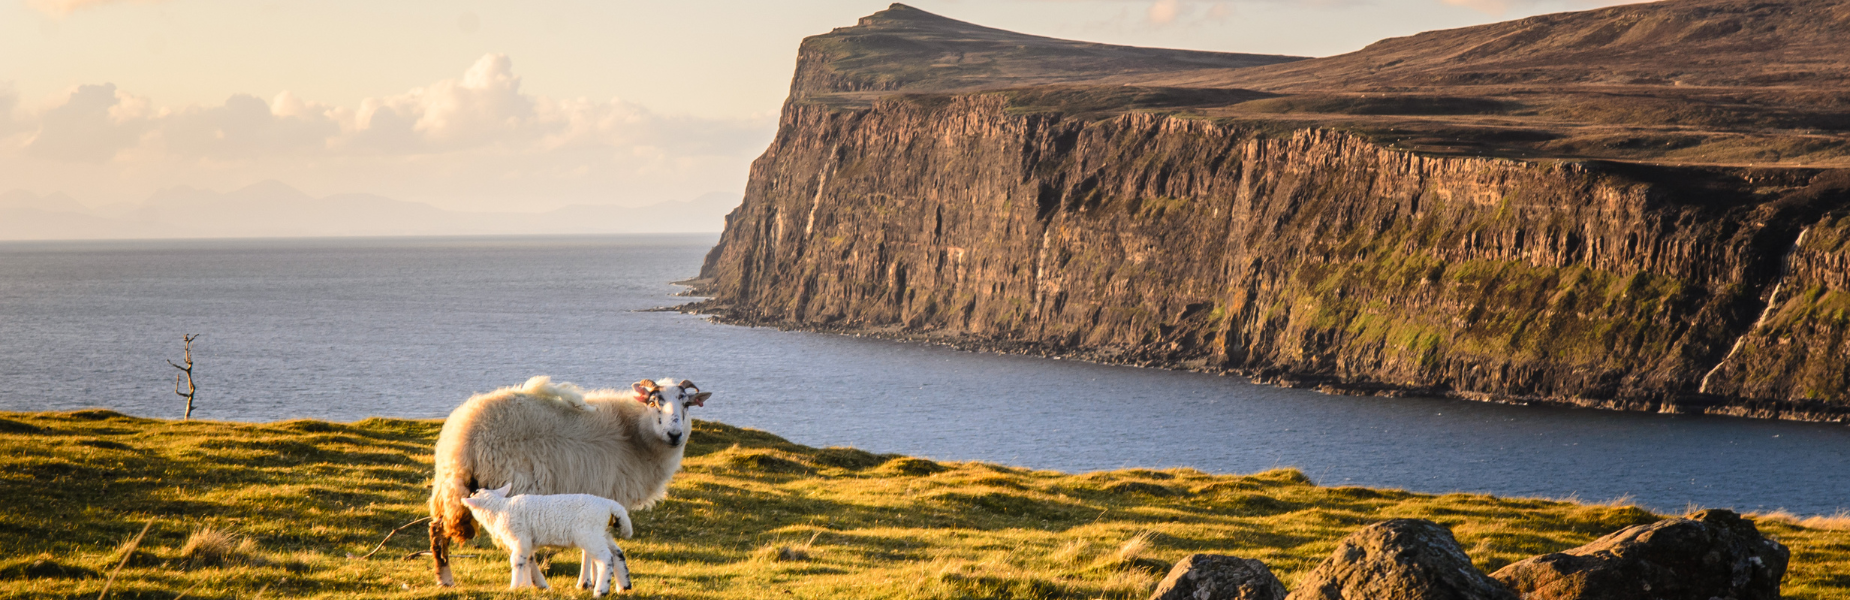 Uitzicht op één van de kliffen op het eiland Skye met een schaap en lammetje op de voorgrond